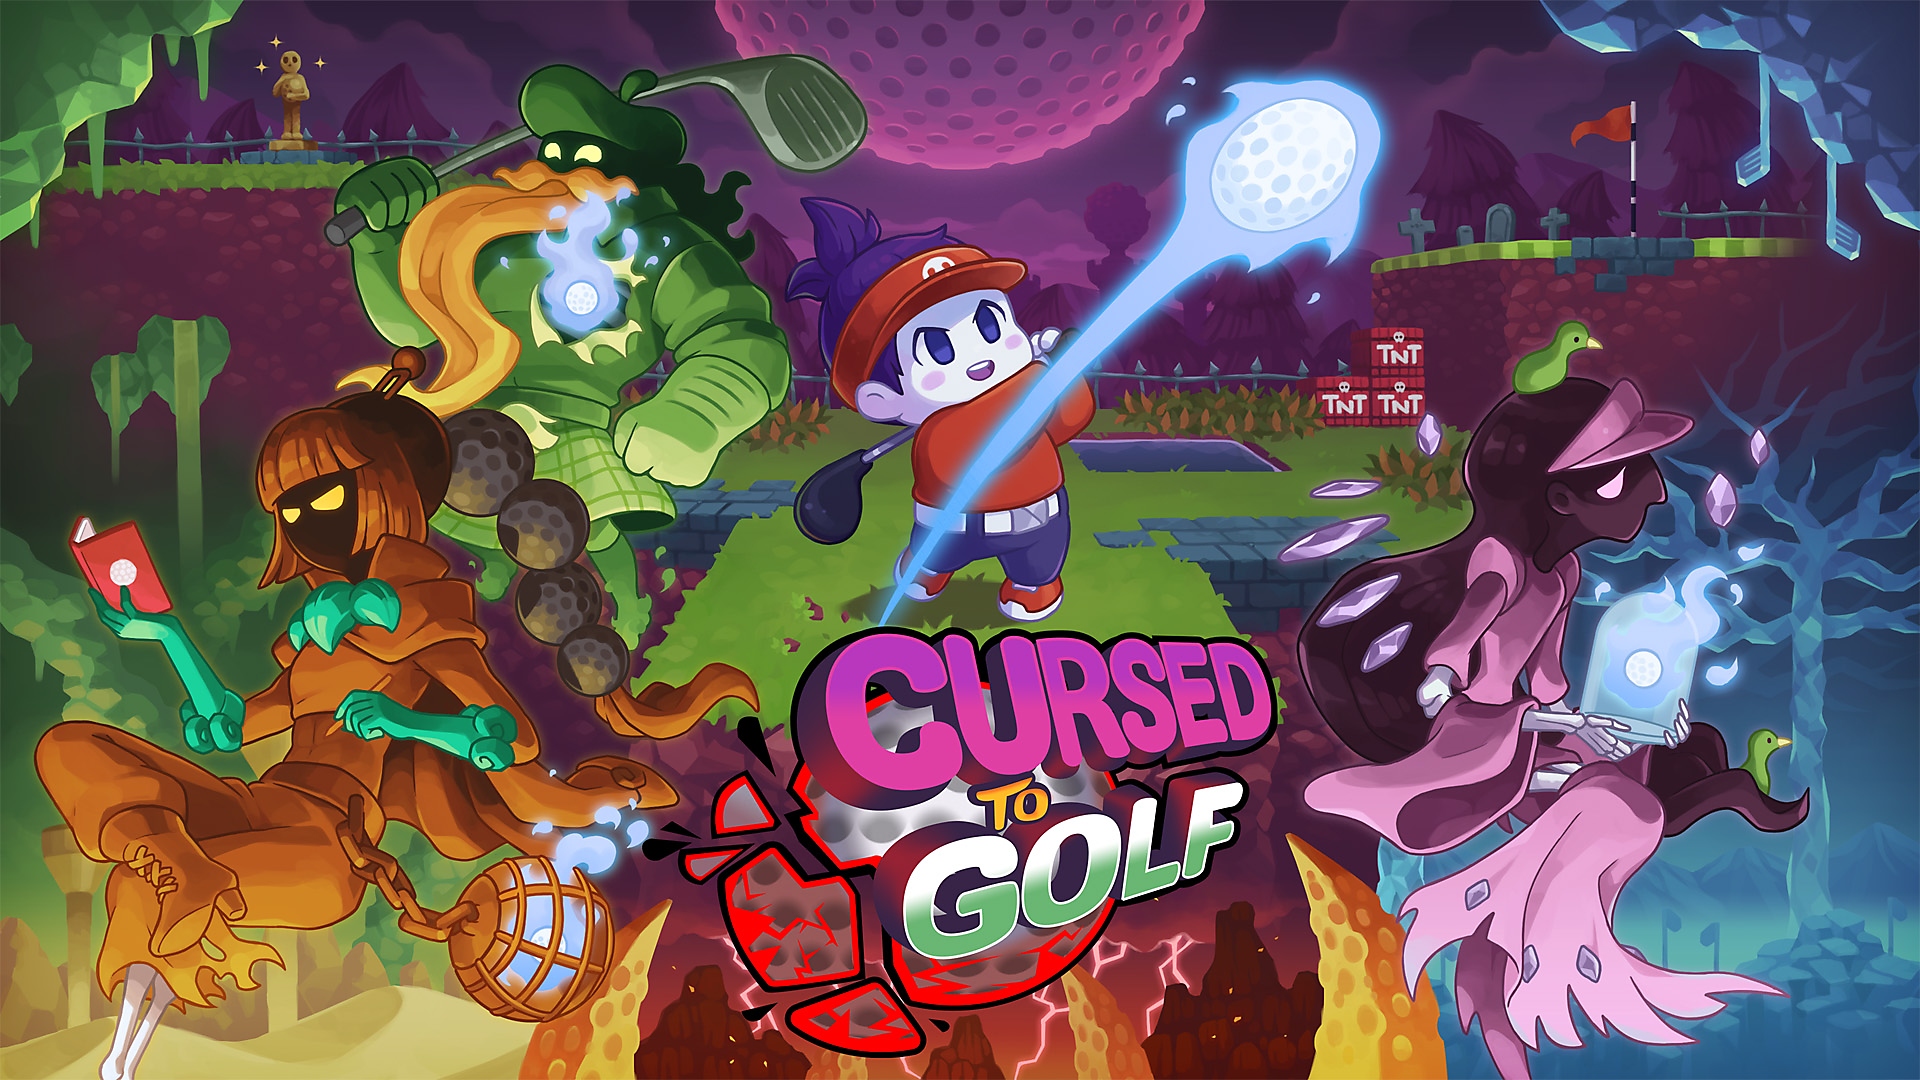 Cursed to Golf - ¿Estás listo para jugar al golf? - Anuncio de fecha de lanzamiento | Juegos PS5 y PS4